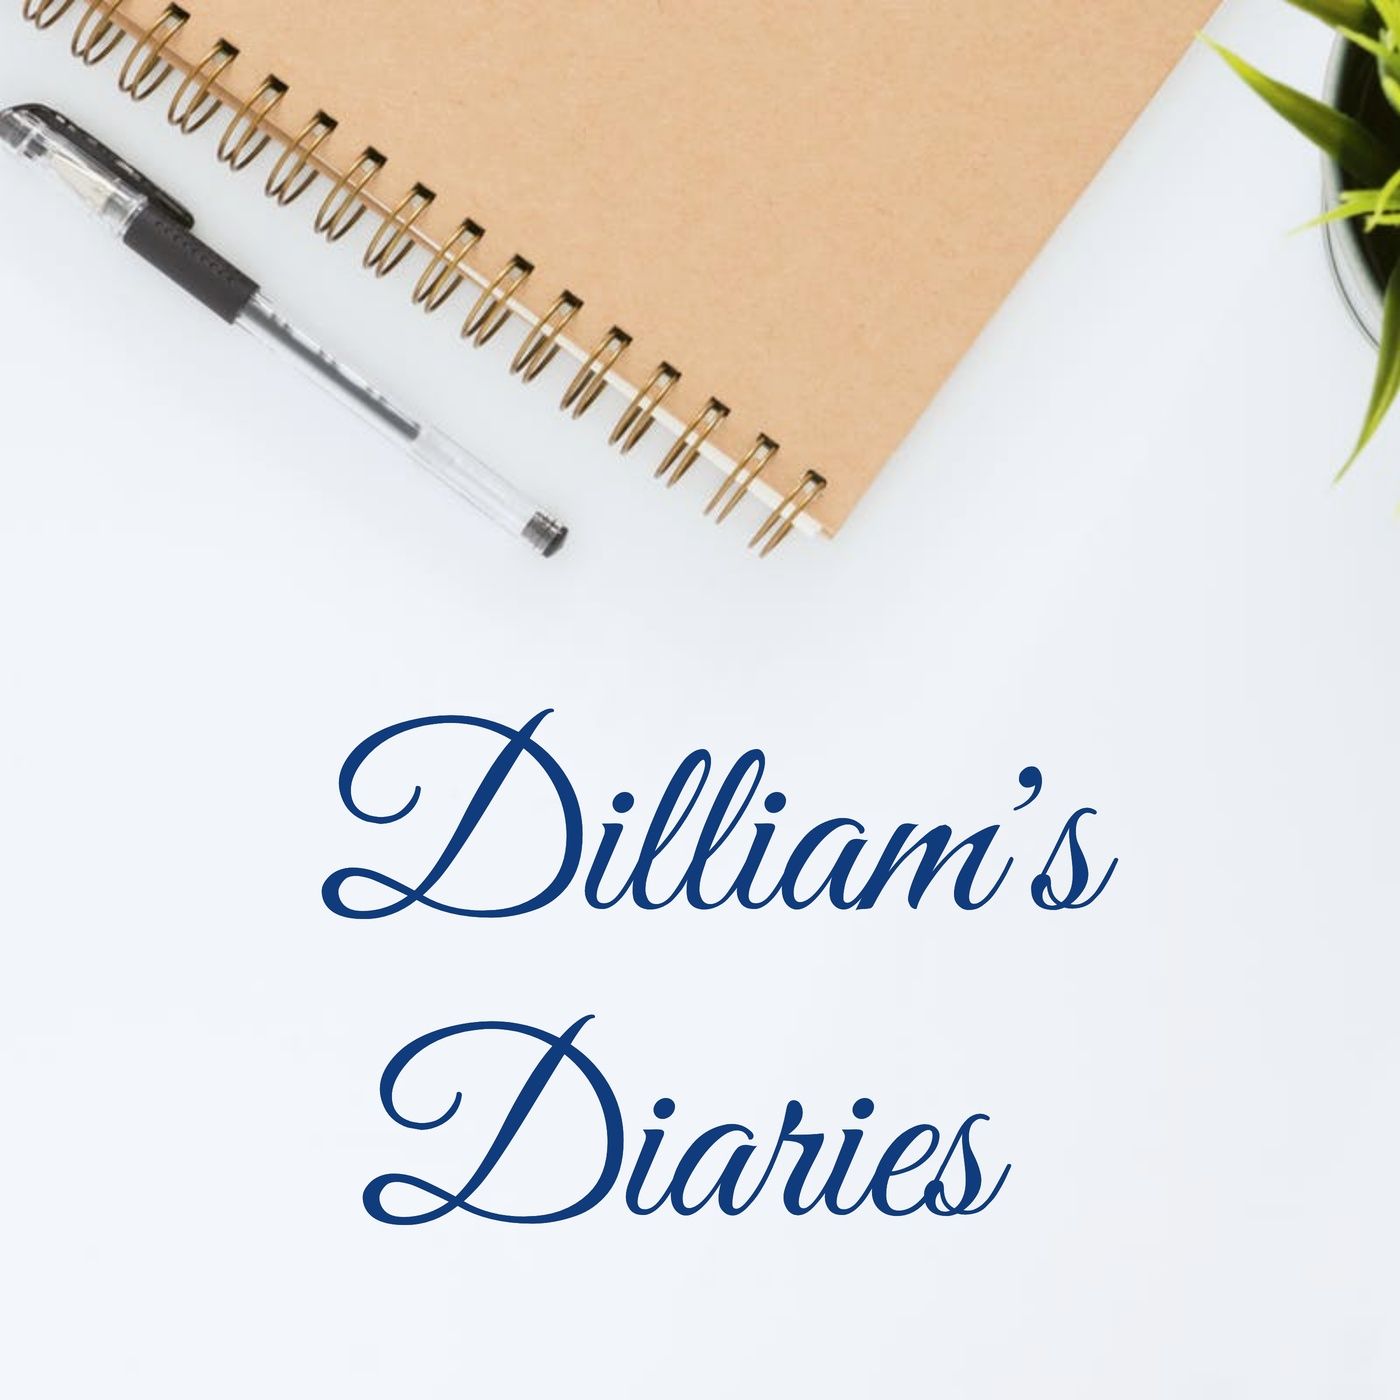 Dilliam's Diaries